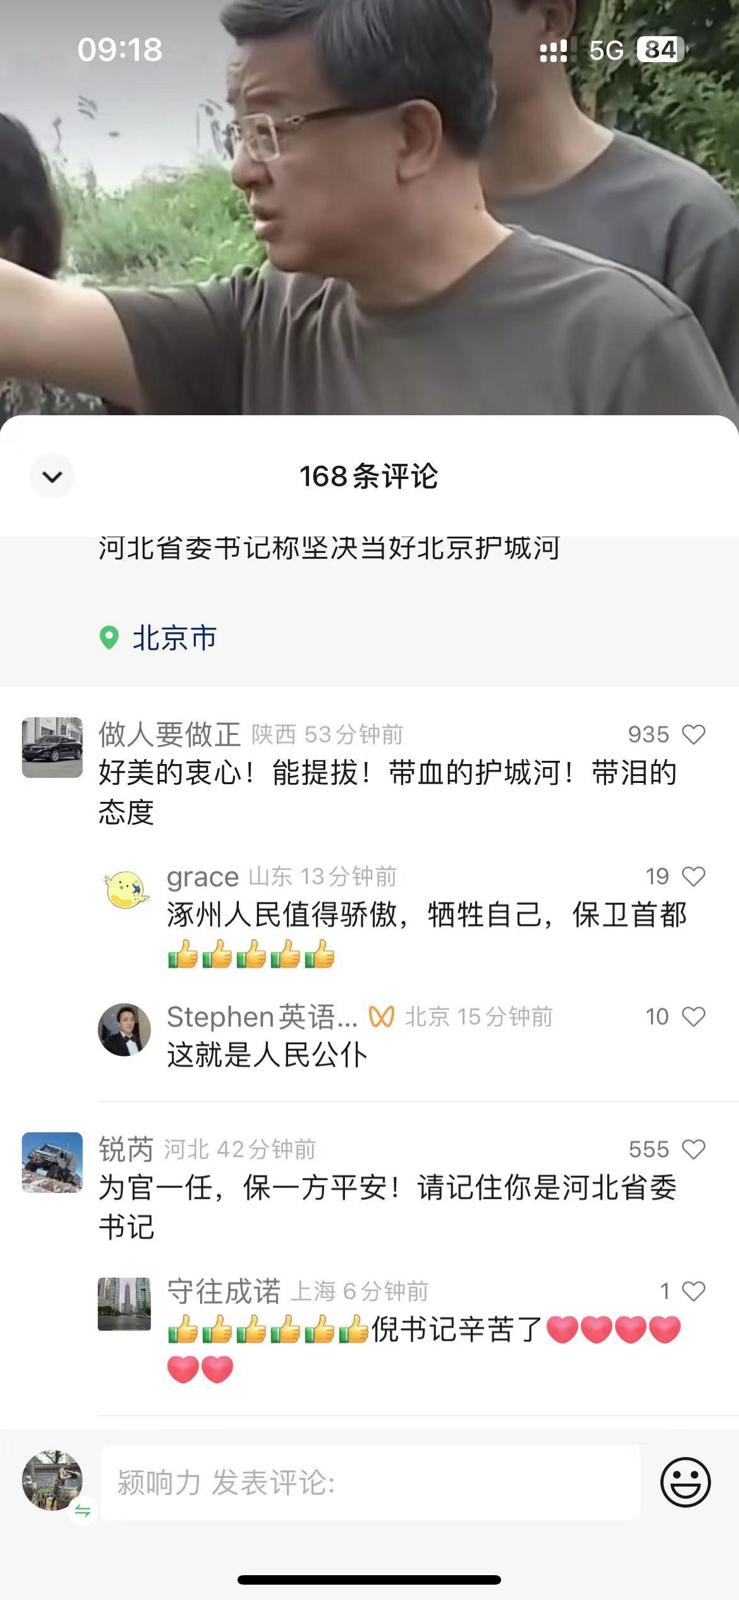 有网民对河北书记倪岳峰“北京护城河”言论表达不满。